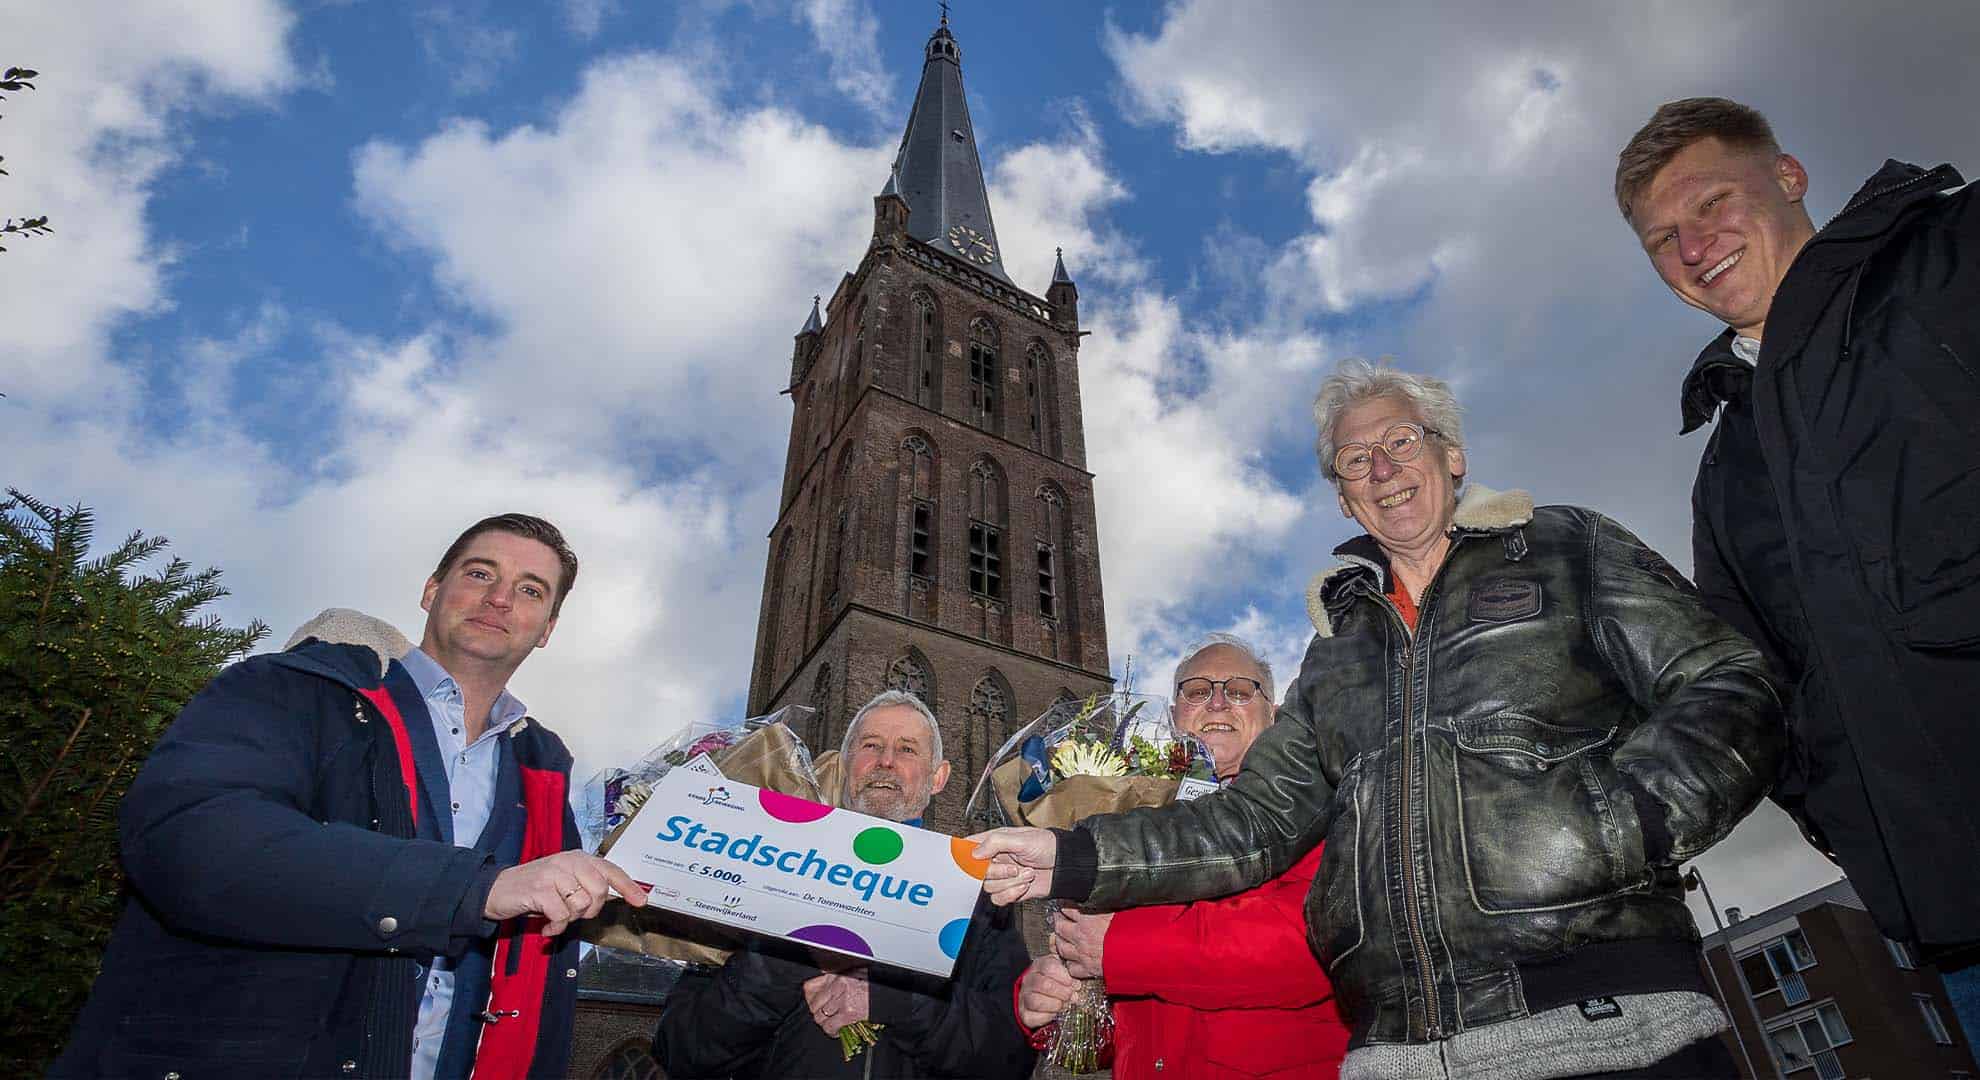 Uitreiking stadscheque gemeente Steenwijkerland - Fotograaf Wilbert Bijzitter